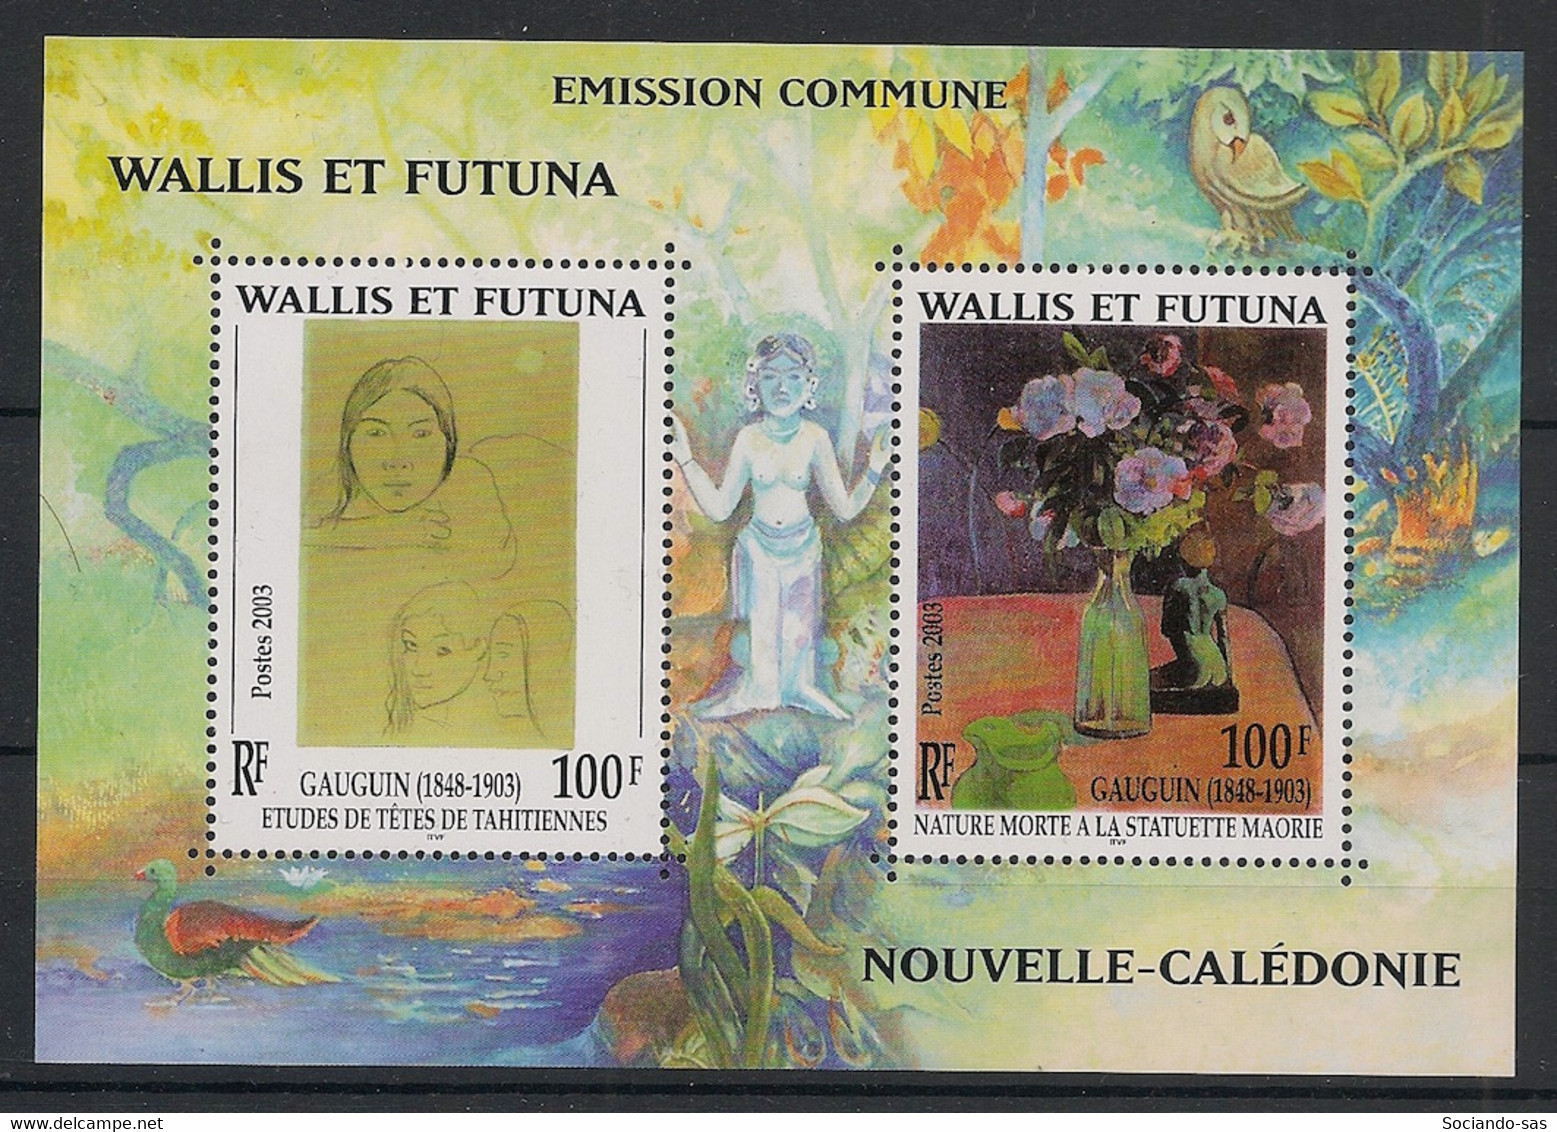 WALLIS ET FUTUNA - 2003 - Bloc Feuillet BF N°YT. 13 - Gauguin - Neuf Luxe ** / MNH / Postfrisch - Blocchi & Foglietti